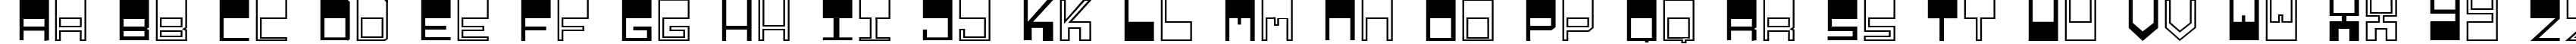 Пример написания английского алфавита шрифтом Relieftechnik 1